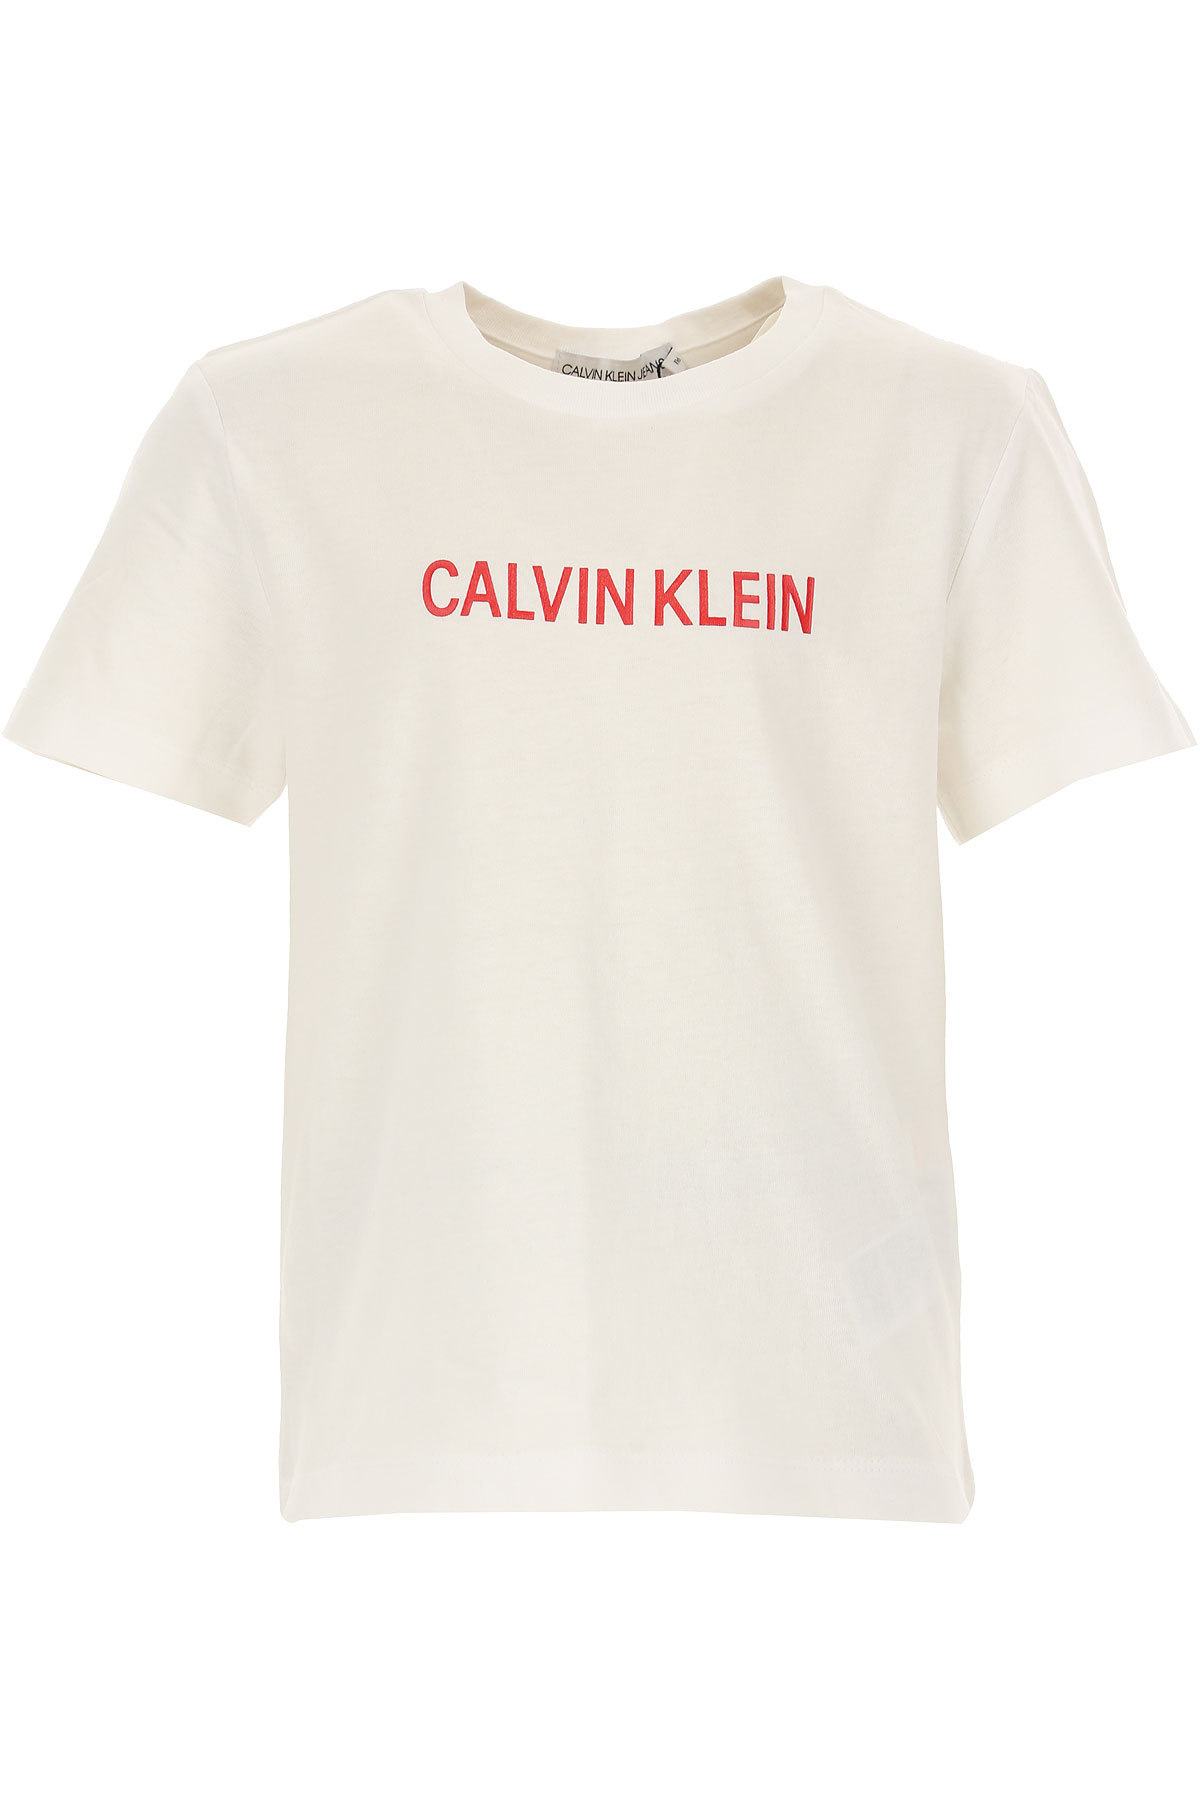 Calvin Klein Kinder T-Shirt für Mädchen Günstig im Sale, Weiss, Baumwolle, 2017, 10Y 12Y 16Y 4Y 6Y 8Y